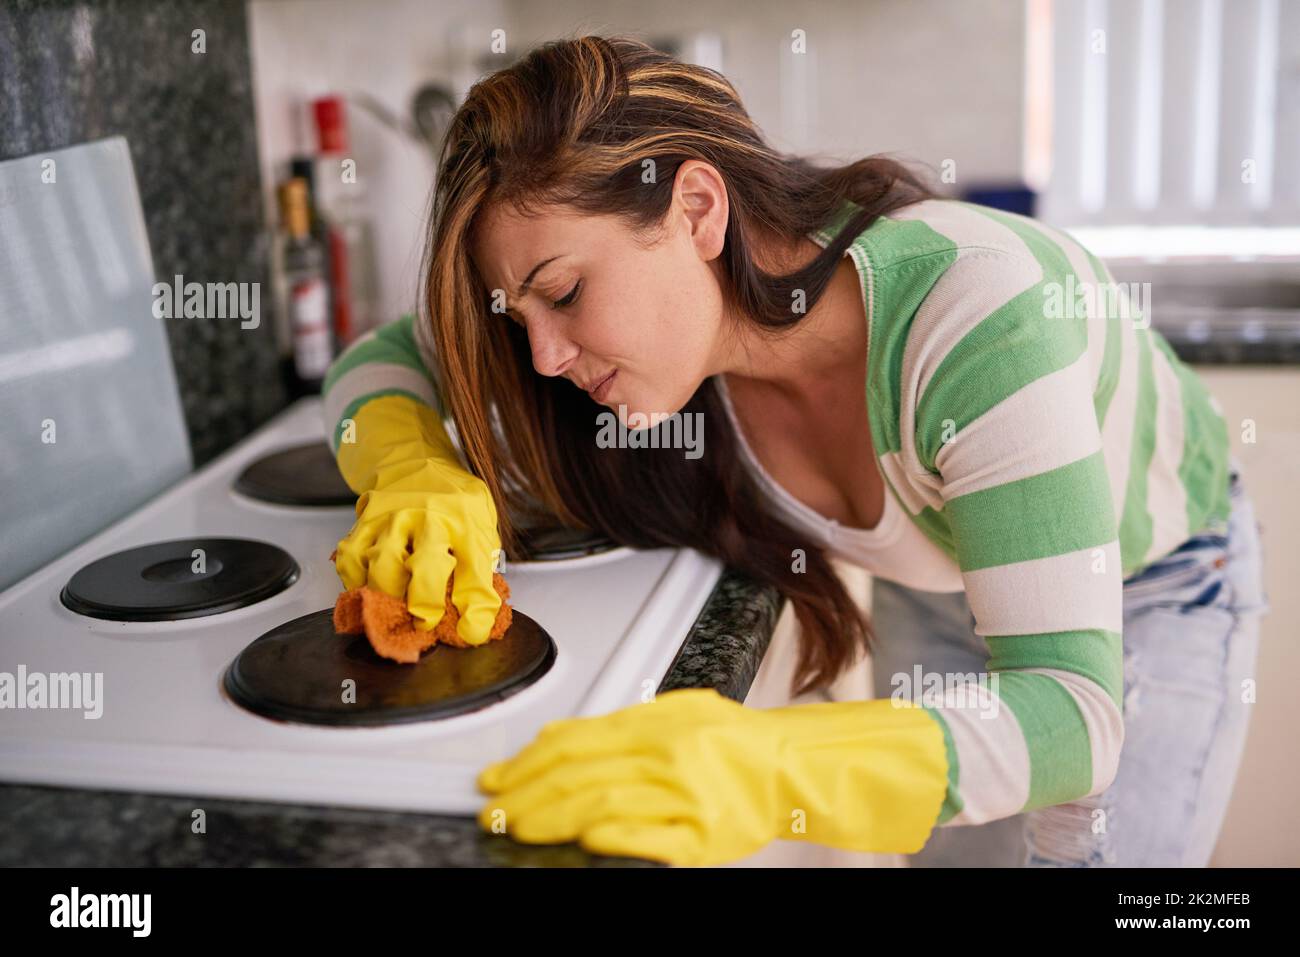 Esta queja simplemente no se apagará. Foto de una mujer joven limpiando una estufa de cocina. Foto de stock